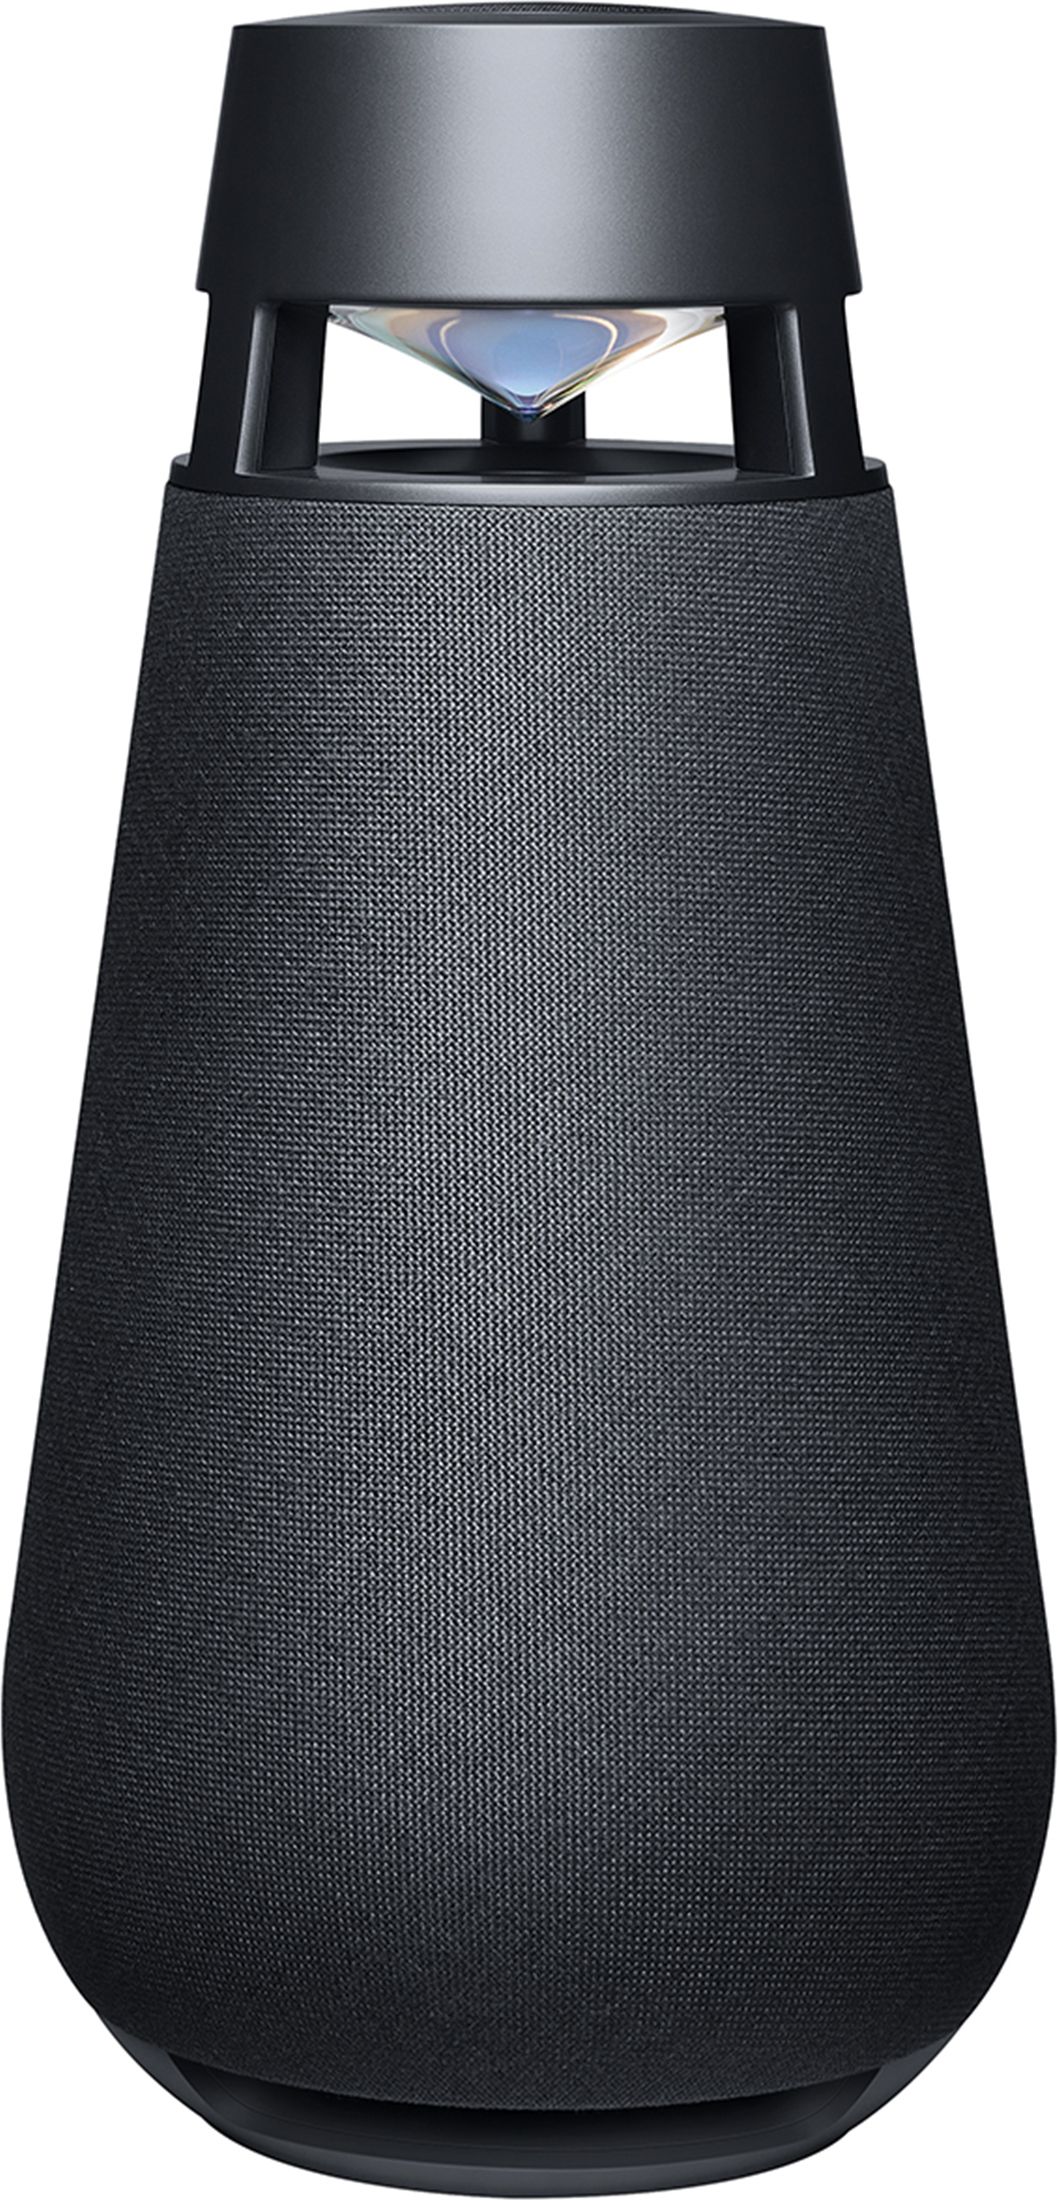 LG XBOOM 360 XO3 Portable Wireless Speaker - Black, Black